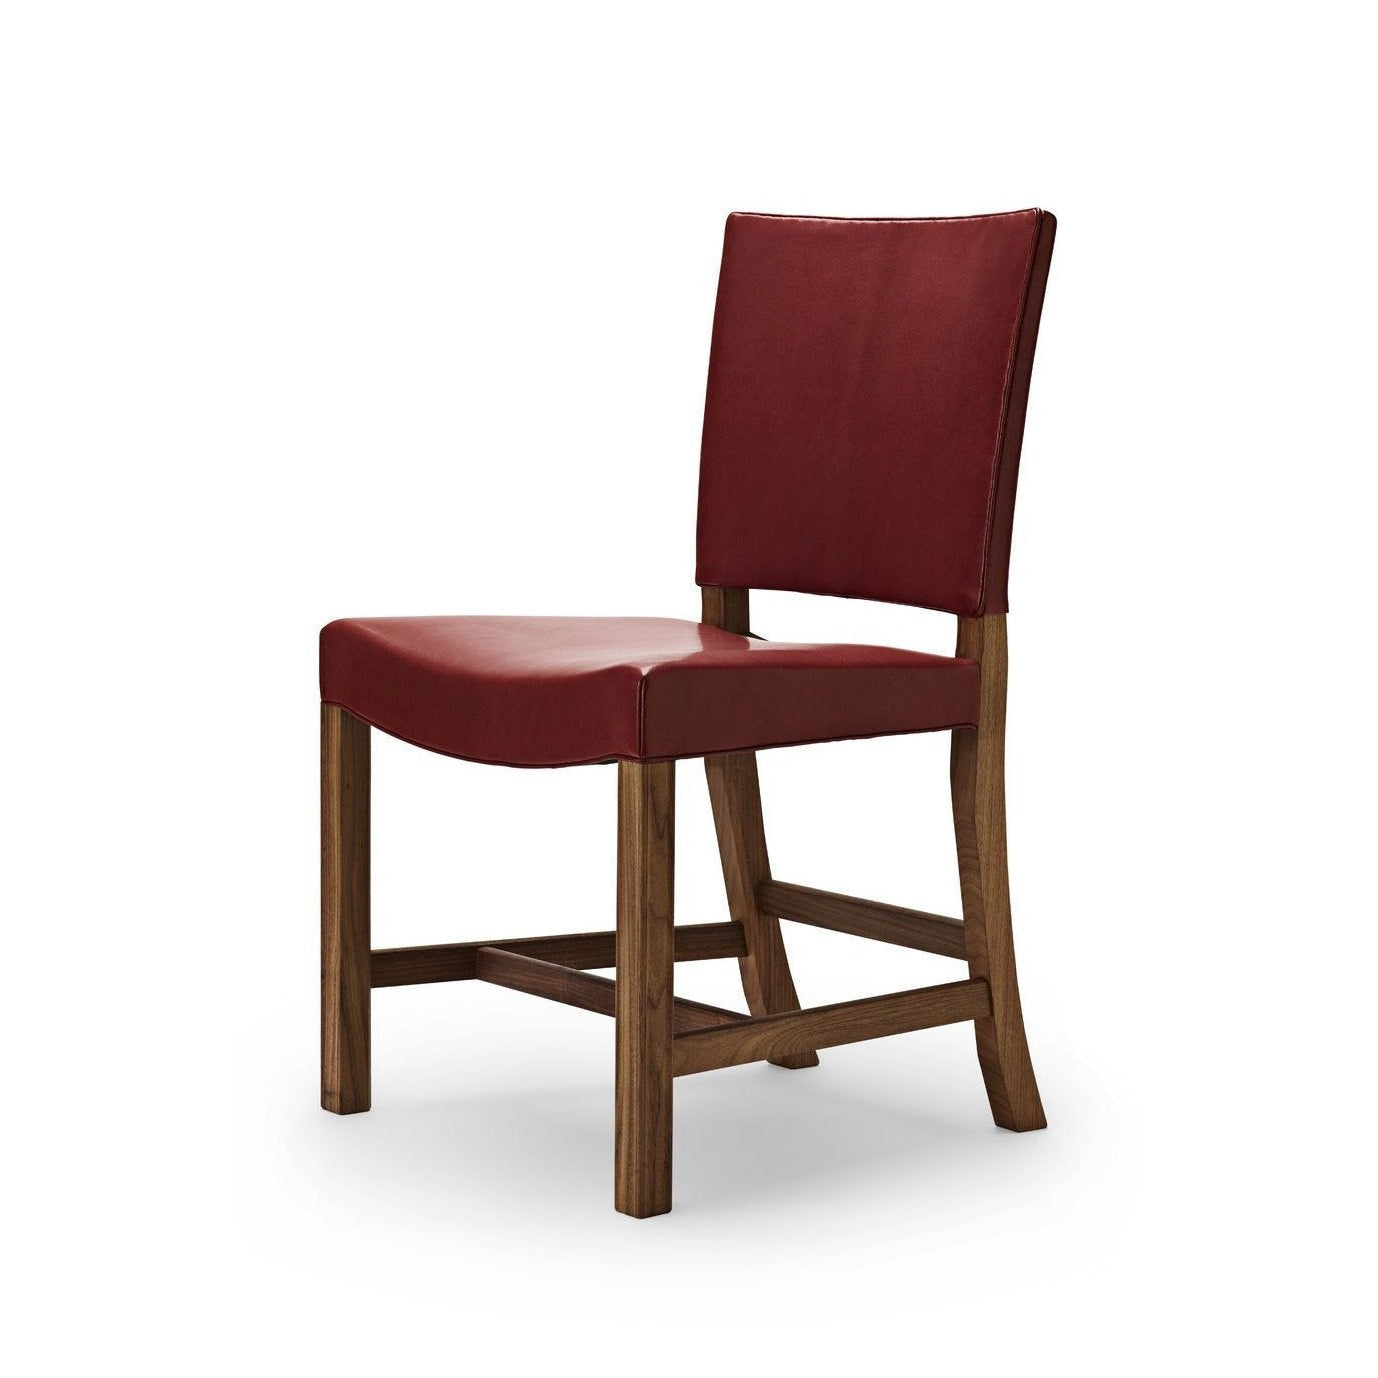 Carl Hansen KK47510 La silla roja, lacada de nogal/cabra roja